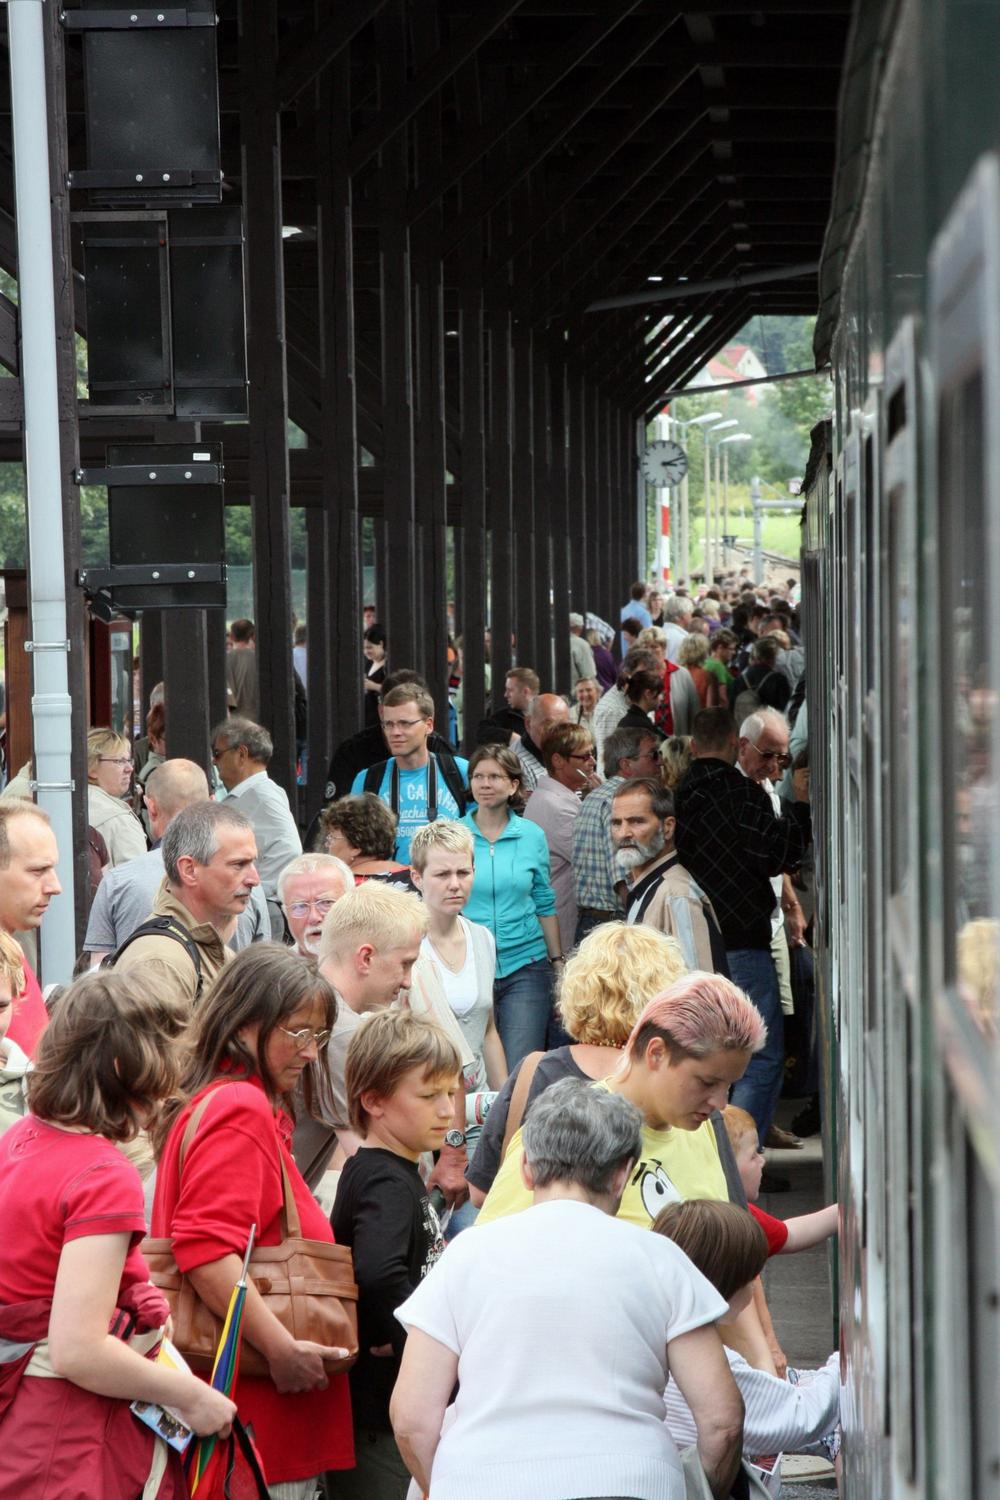 Reger Fahrgastwechsel im Bf Dippoldiswalde. Trotz verregneten Wetters kamen nach Veranstalterangaben zum Festival 2000 Schaulustige zu den 50 Einzelveranstaltungen und über 6000 Fahrgäste füllten die Züge.